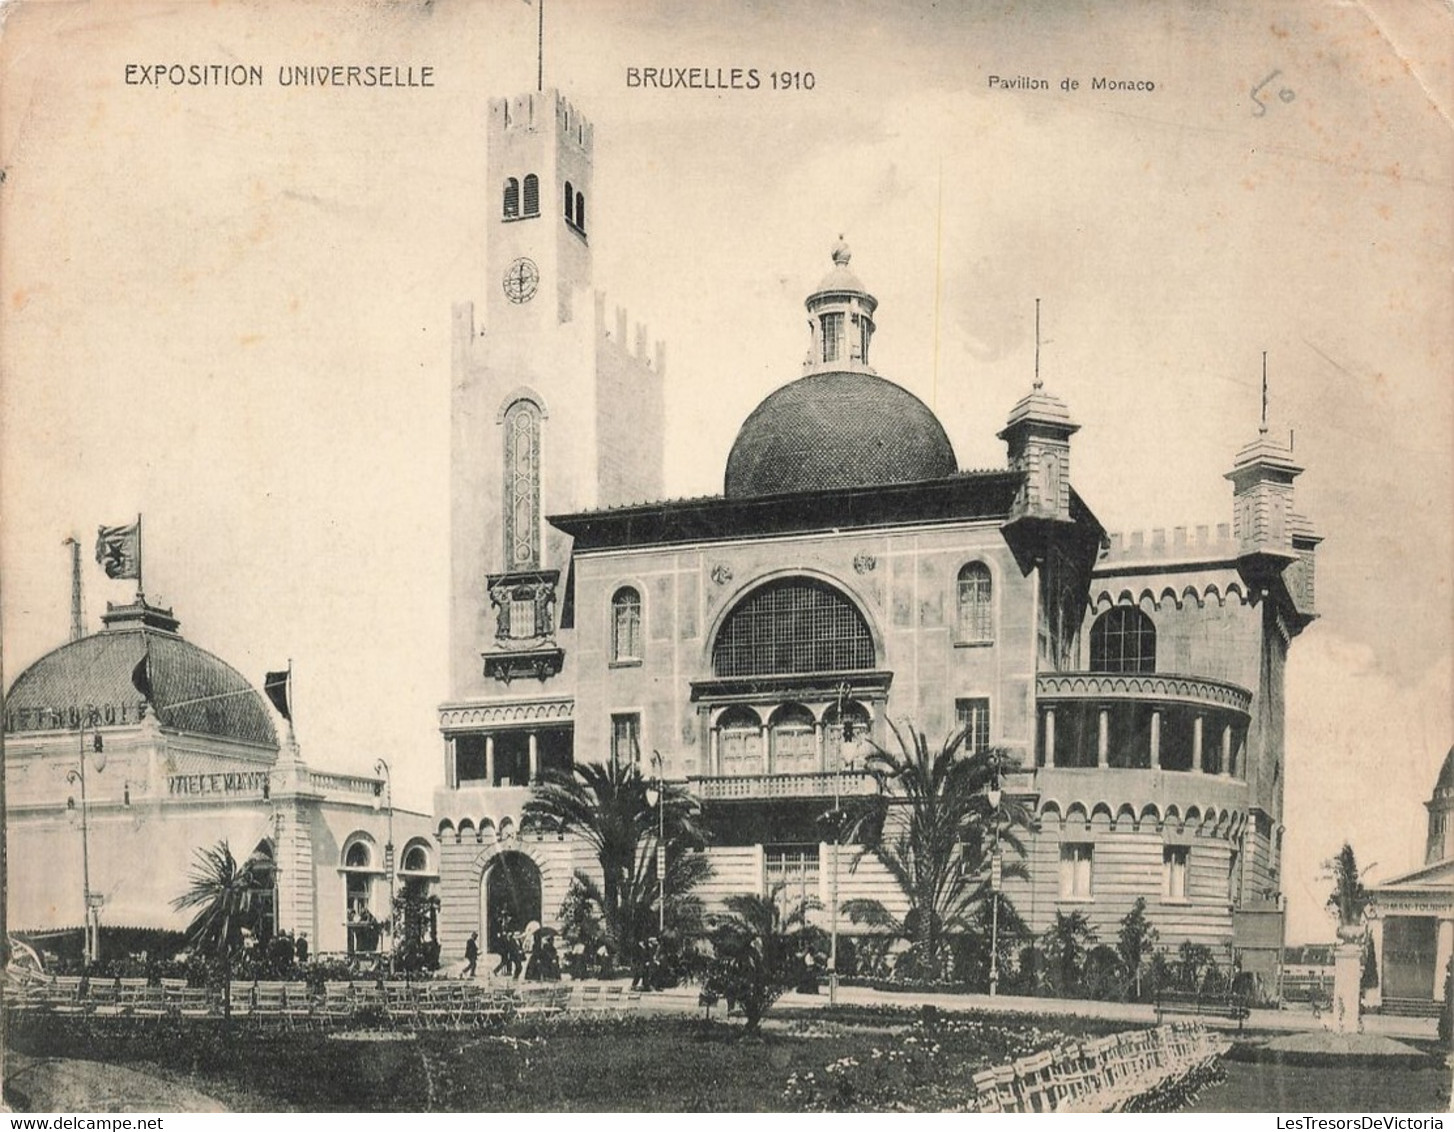 Grand Format - Bruxelles - Lot de 6 Cartes Exposition universelle Bruxelles 1910 - Dim. 18/14 cm - Carte Postale Anc.